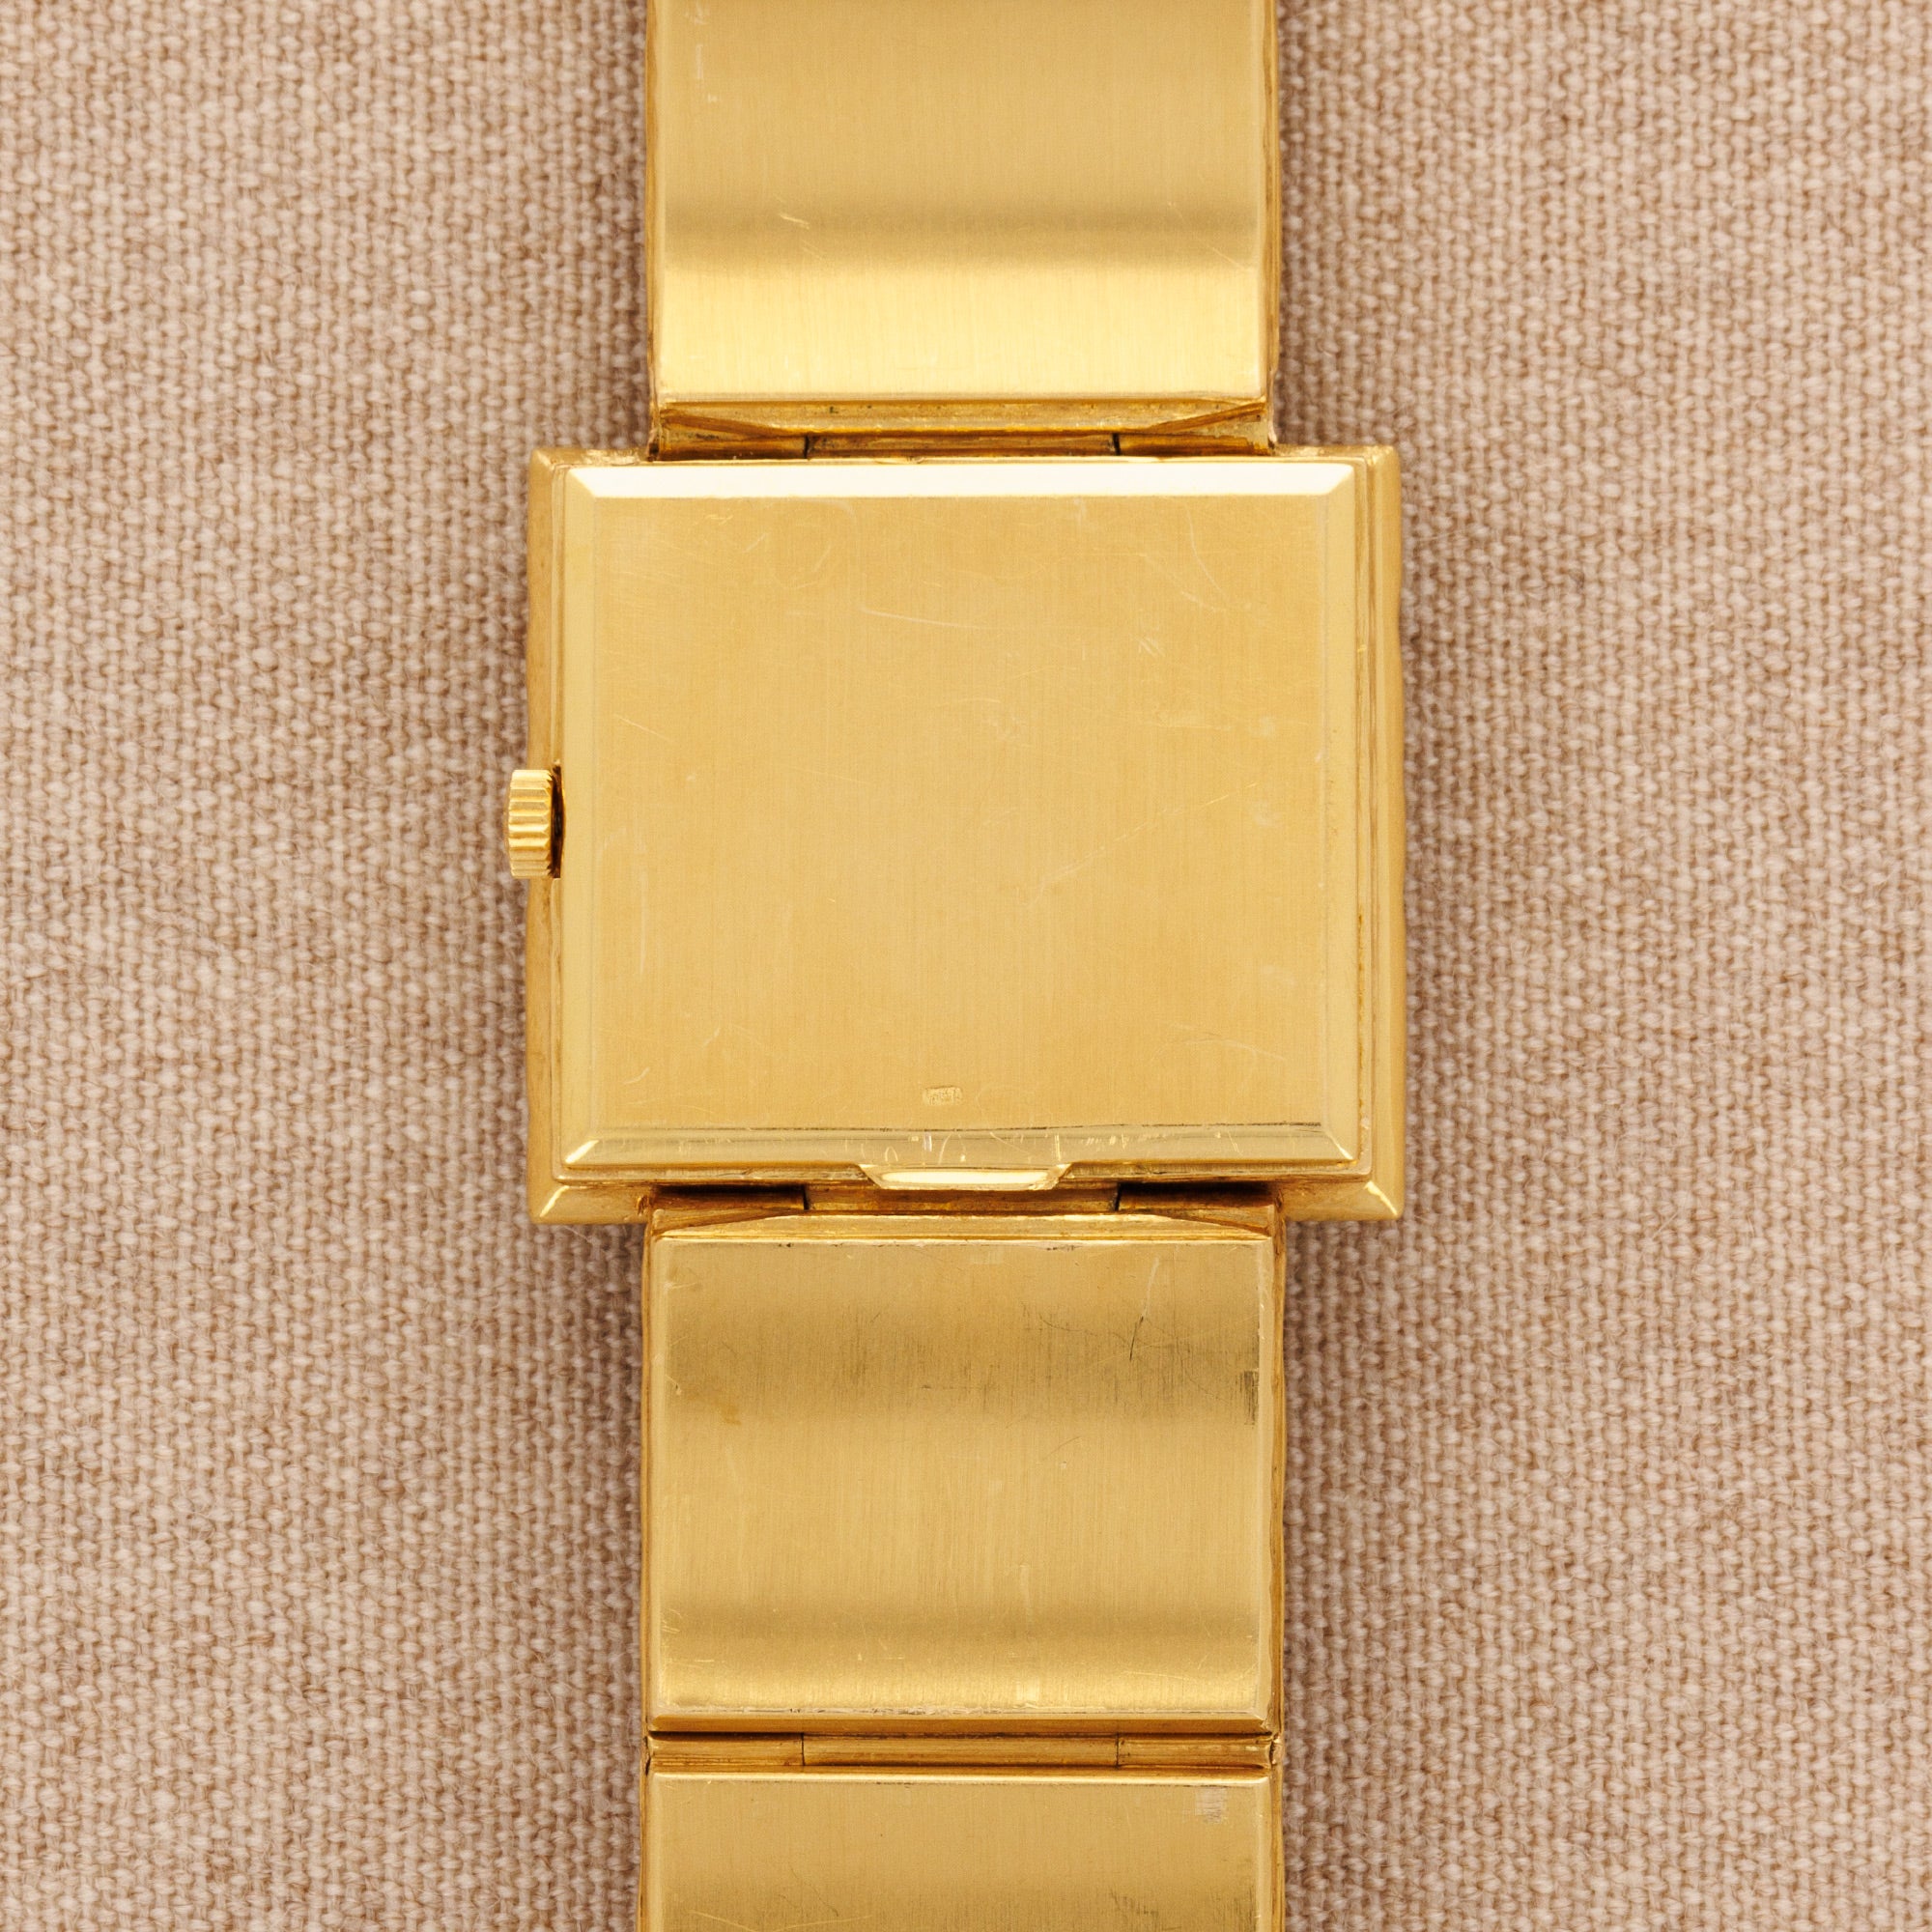 Patek Philippe - Patek Philippe Yellow Gold Pepita Ref. 4121 - The Keystone Watches